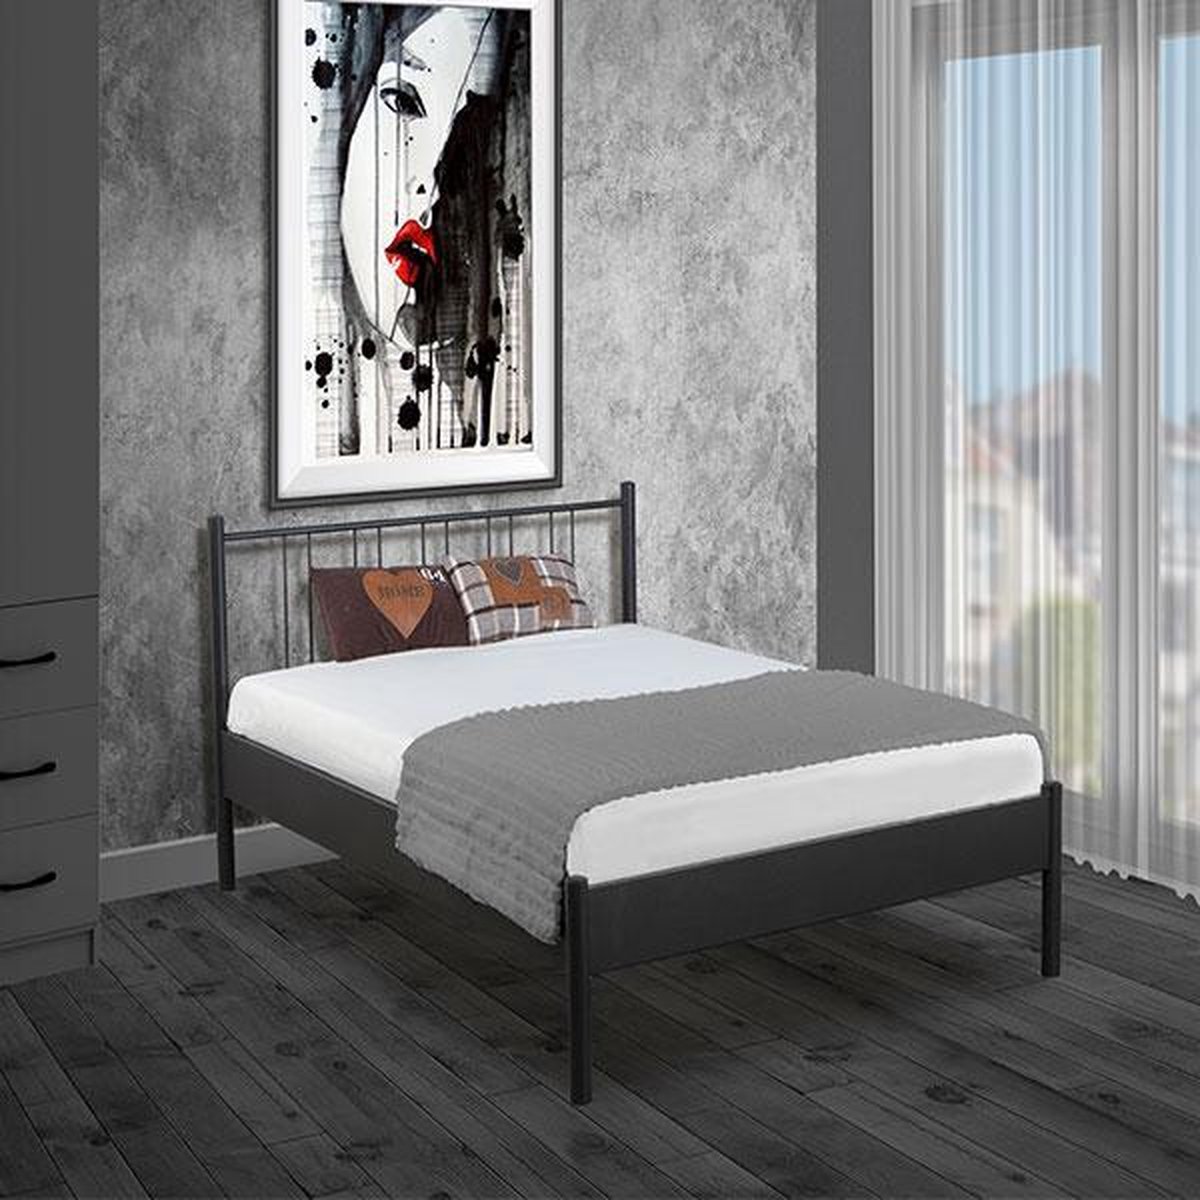 Bed Box Holland Metaal bed Moon zilver 140x200 lattenbodem eenpersoons -Design